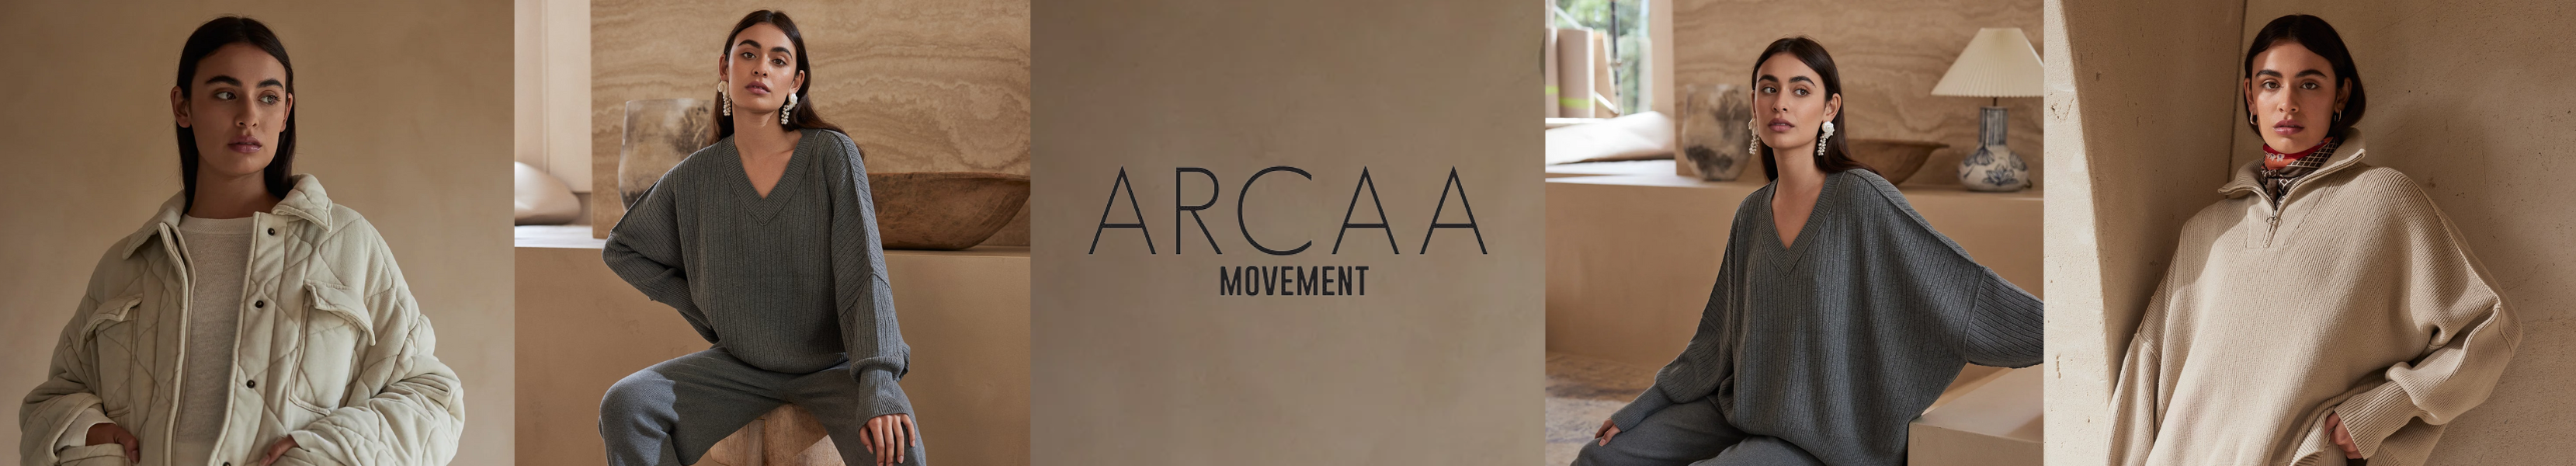 Arcaa Movement